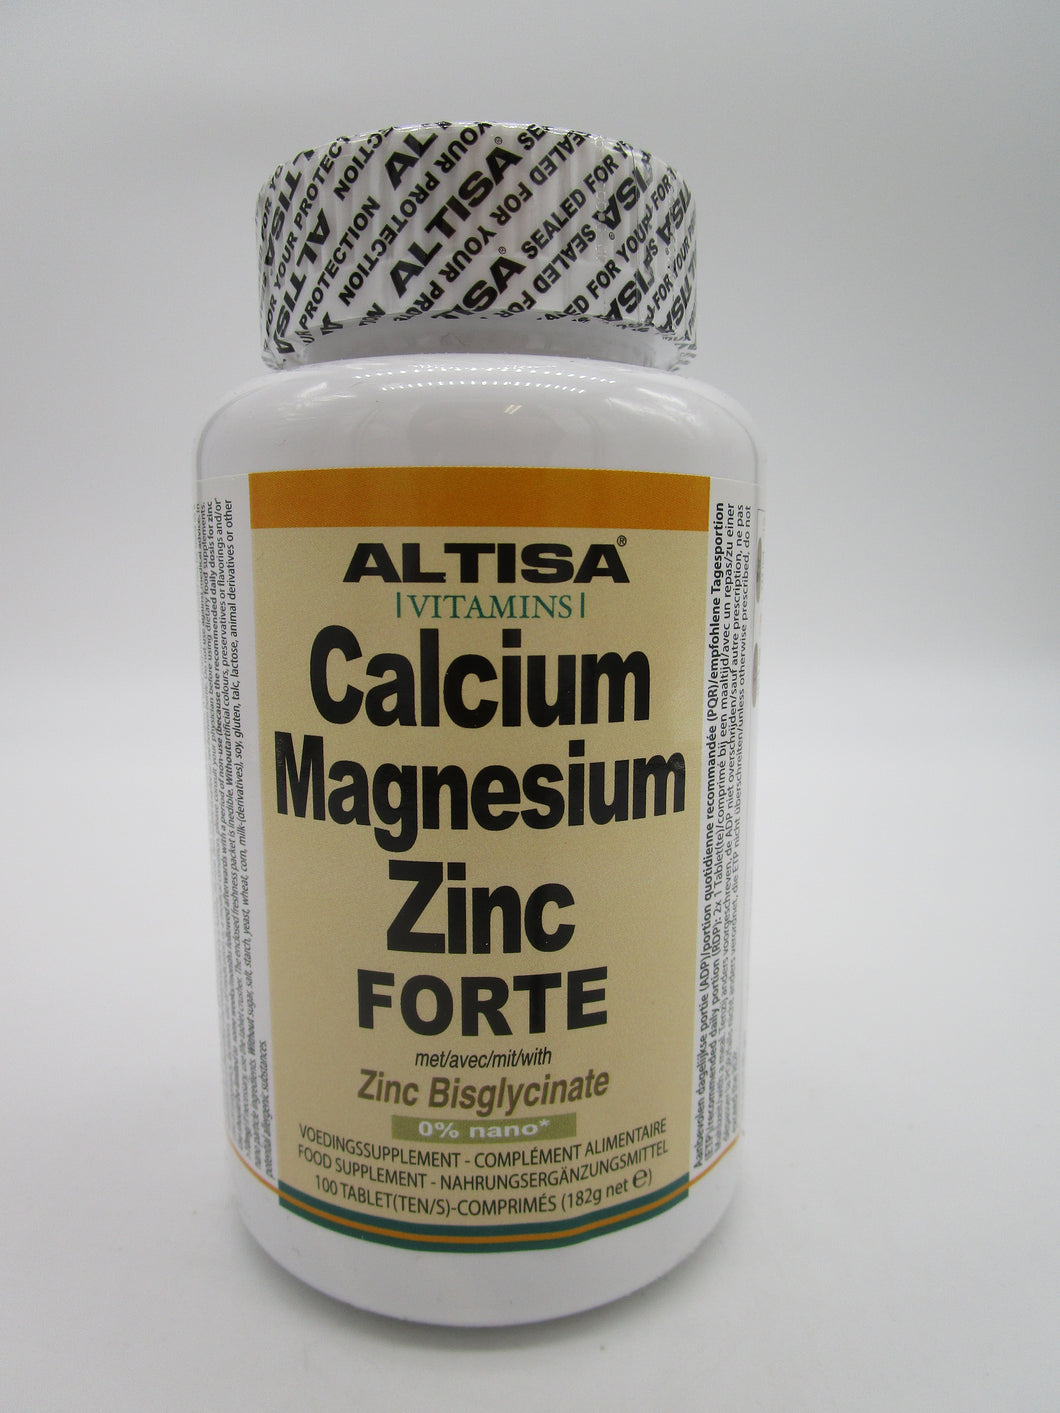 Altisa Calcium Magnesium Zink forte 100 tab